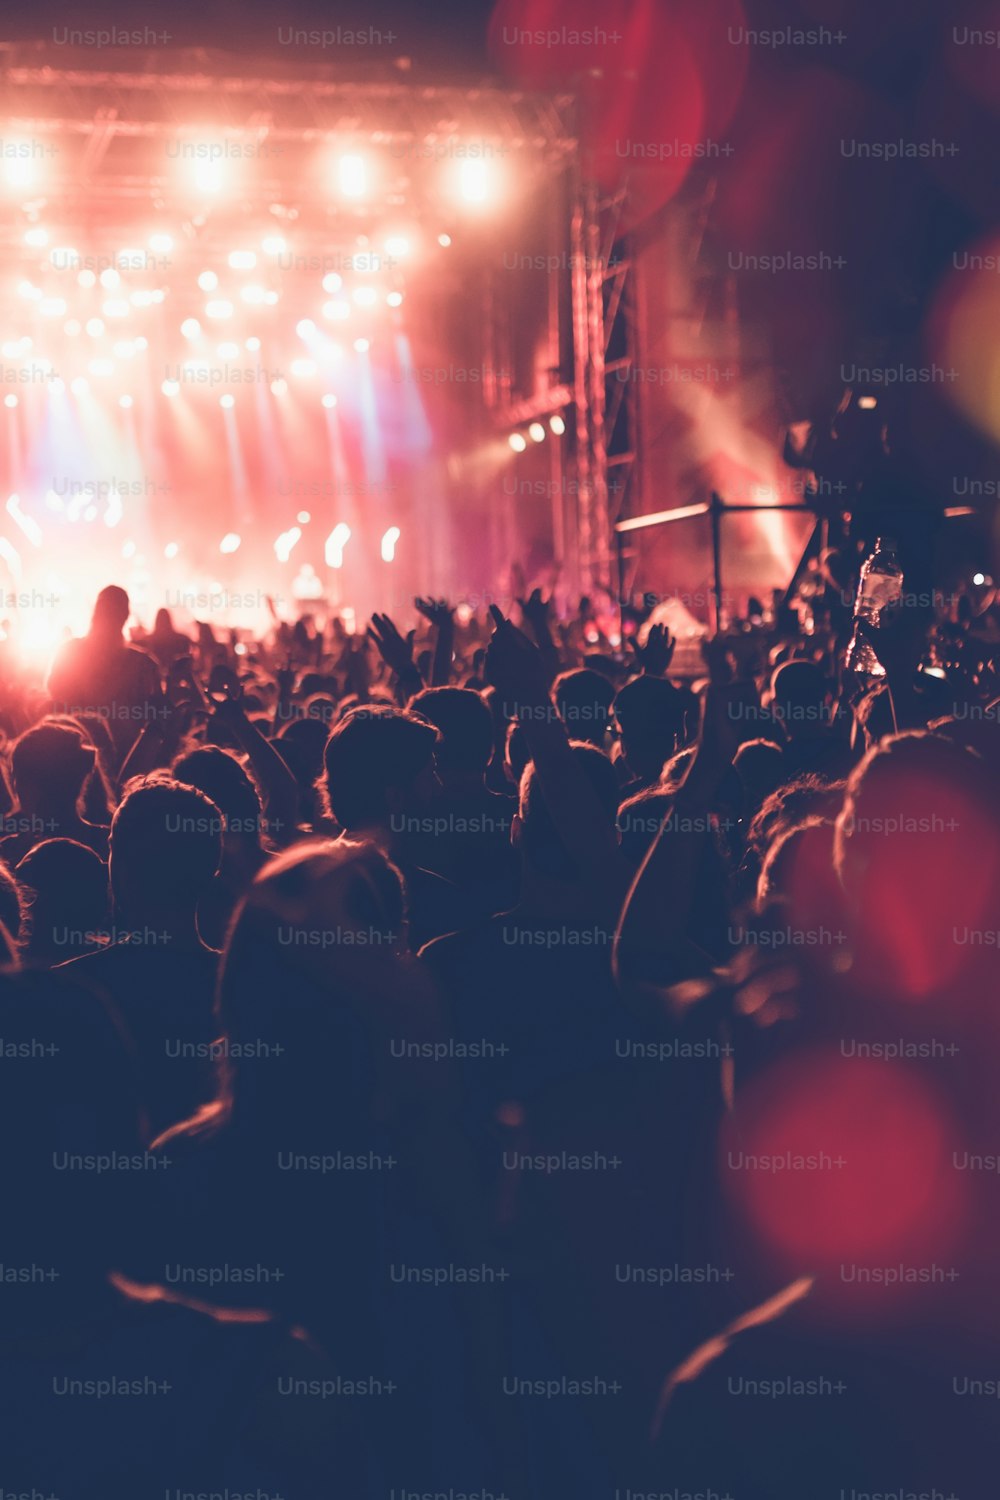 Siluetas de la multitud del concierto del festival frente a las luces brillantes del escenario. Personas irreconocibles y efectos coloridos.